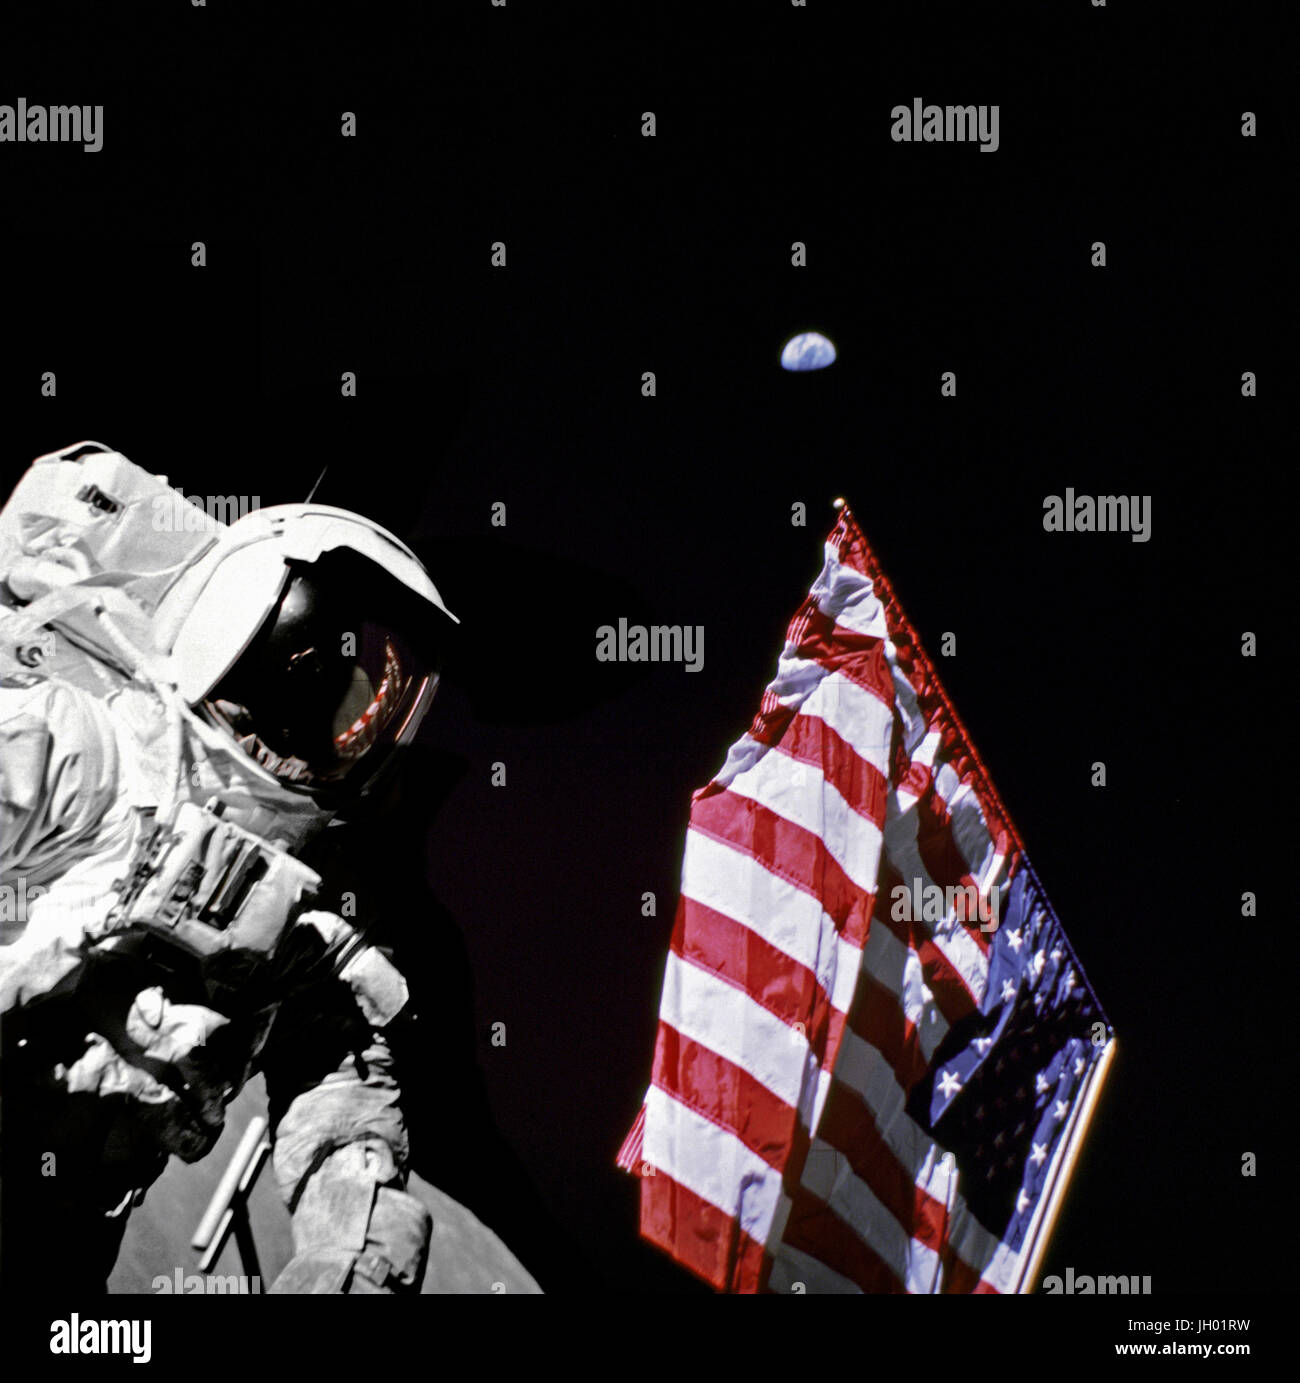 Geologe-Astronaut Harrison Schmitt, Pilot der Mondlandefähre von Apollo 17, ist neben der amerikanischen Flagge während Extravehicular Activity (EVA) von der Mission der NASA letzten Mondlandung der Apollo-Serie fotografiert. Das Foto wurde am Taurus-Littrow-Landeplatz. Der höchste Teil der Flagge scheint in Richtung unseres Planetenerde im fernen Hintergrund zeigen. Fotograf: NASA / Eugene Cernan Stockfoto